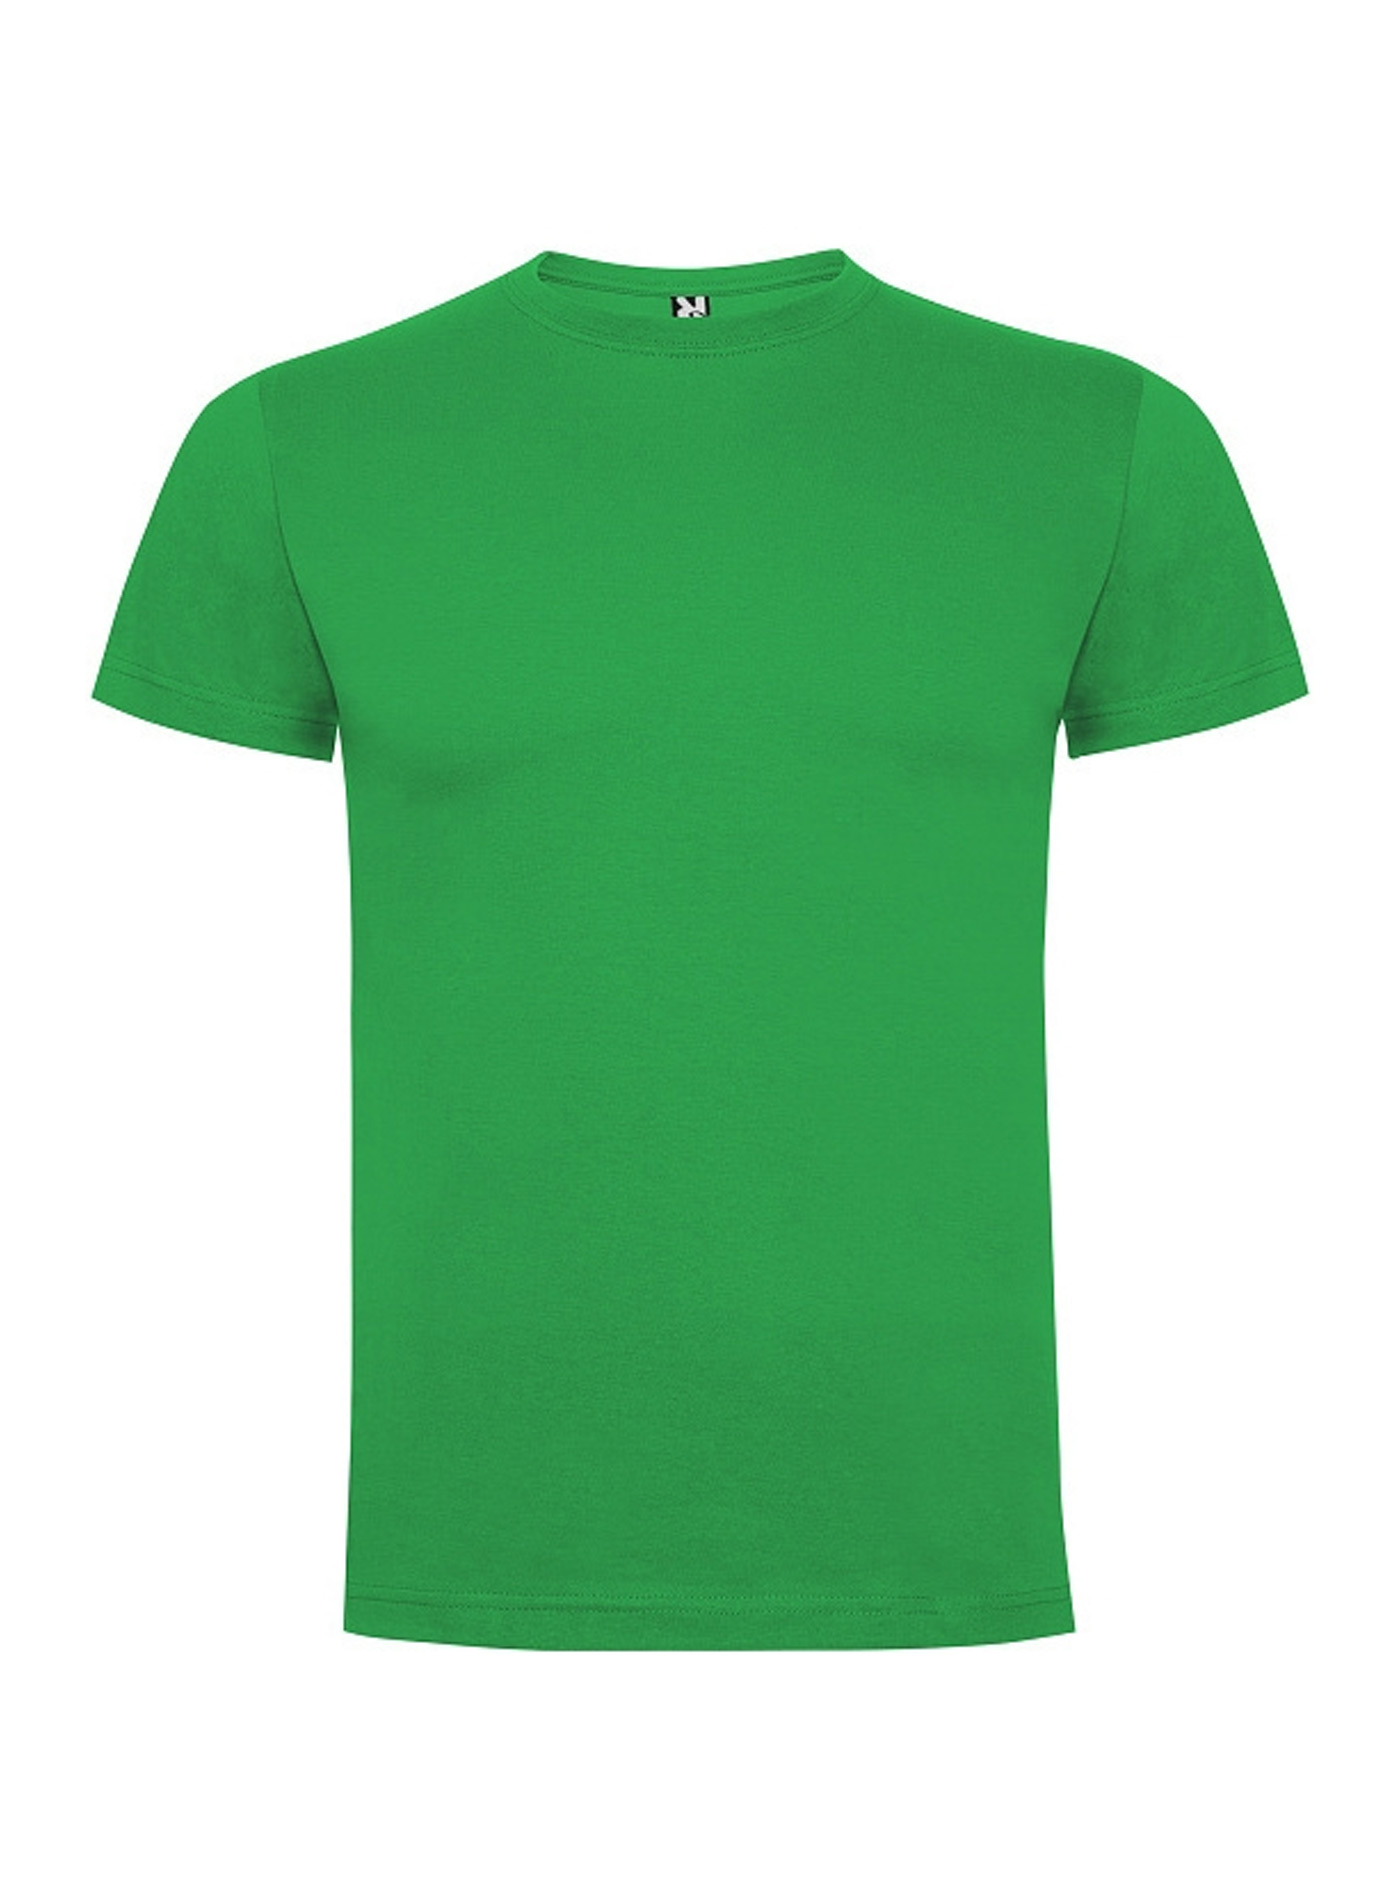 Pánské tričko Roly Dogo premium - Irská zelená M